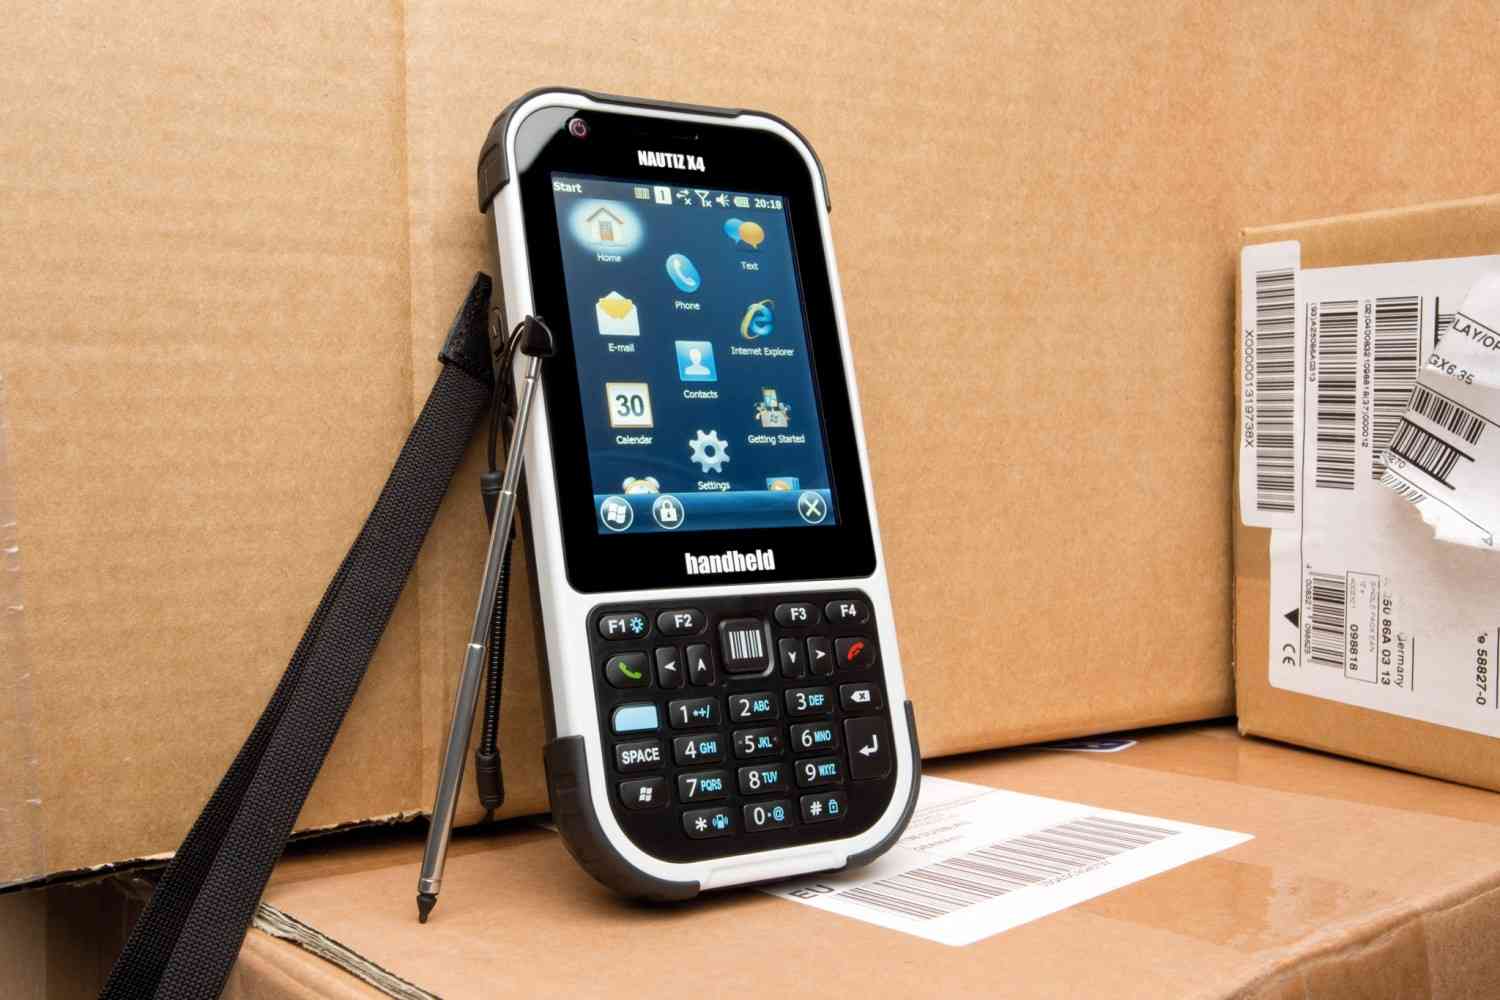 Mobile sonstiges Handheld Nautiz X4 im Test, Bild 1